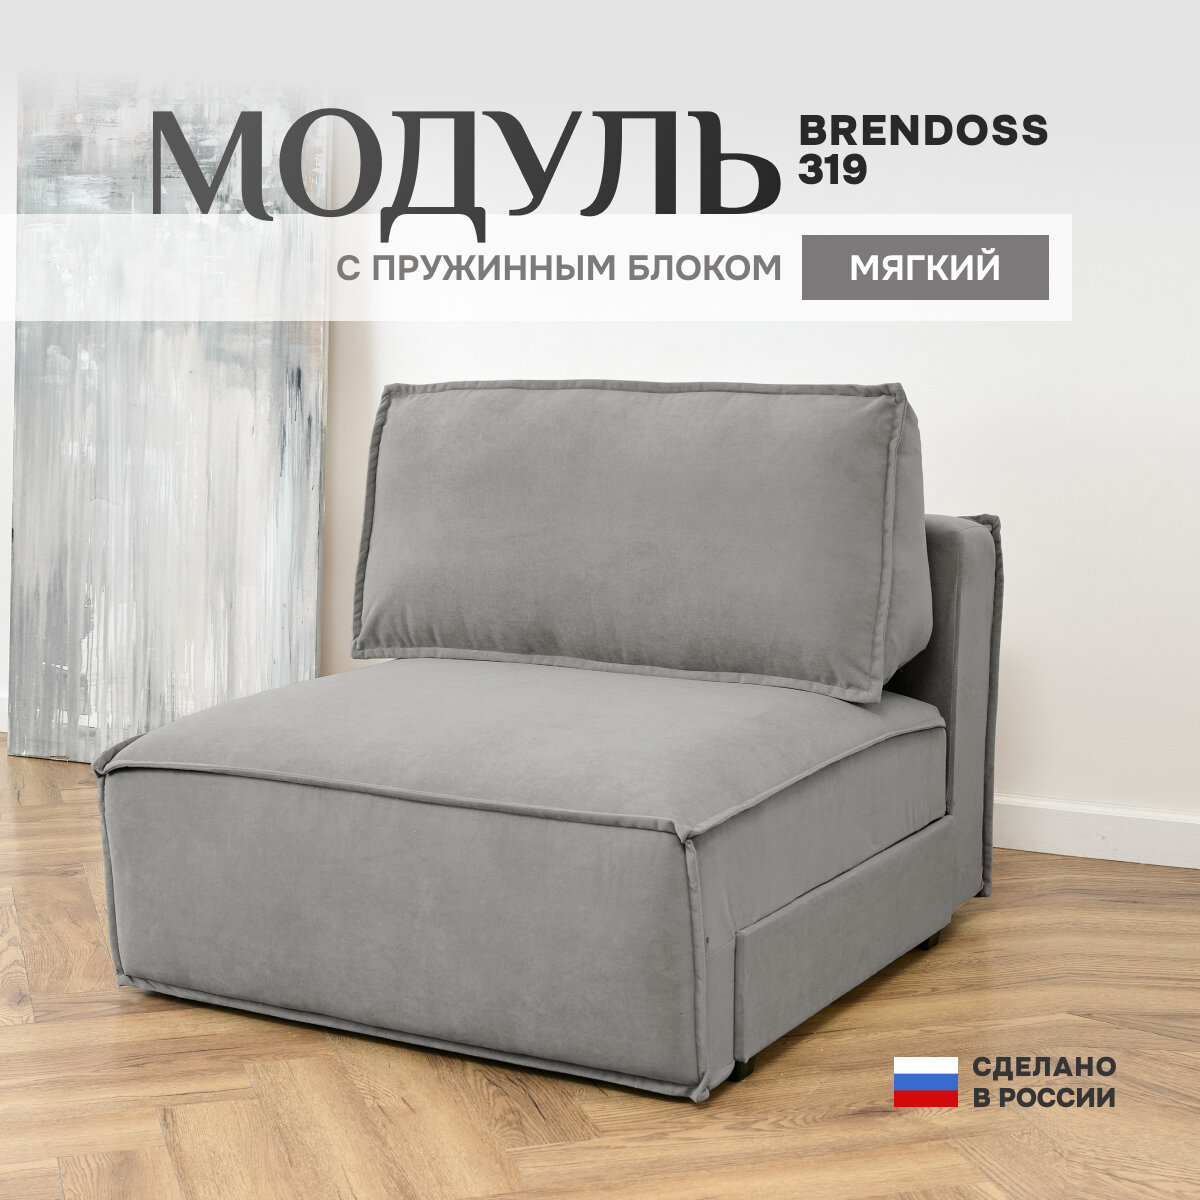 Модуль Brendoss 319 диван раскладной, в дополнение к дивану, механизм клик-кляк, материал износостойкий велюр, цвет серый, 100х120х89 см